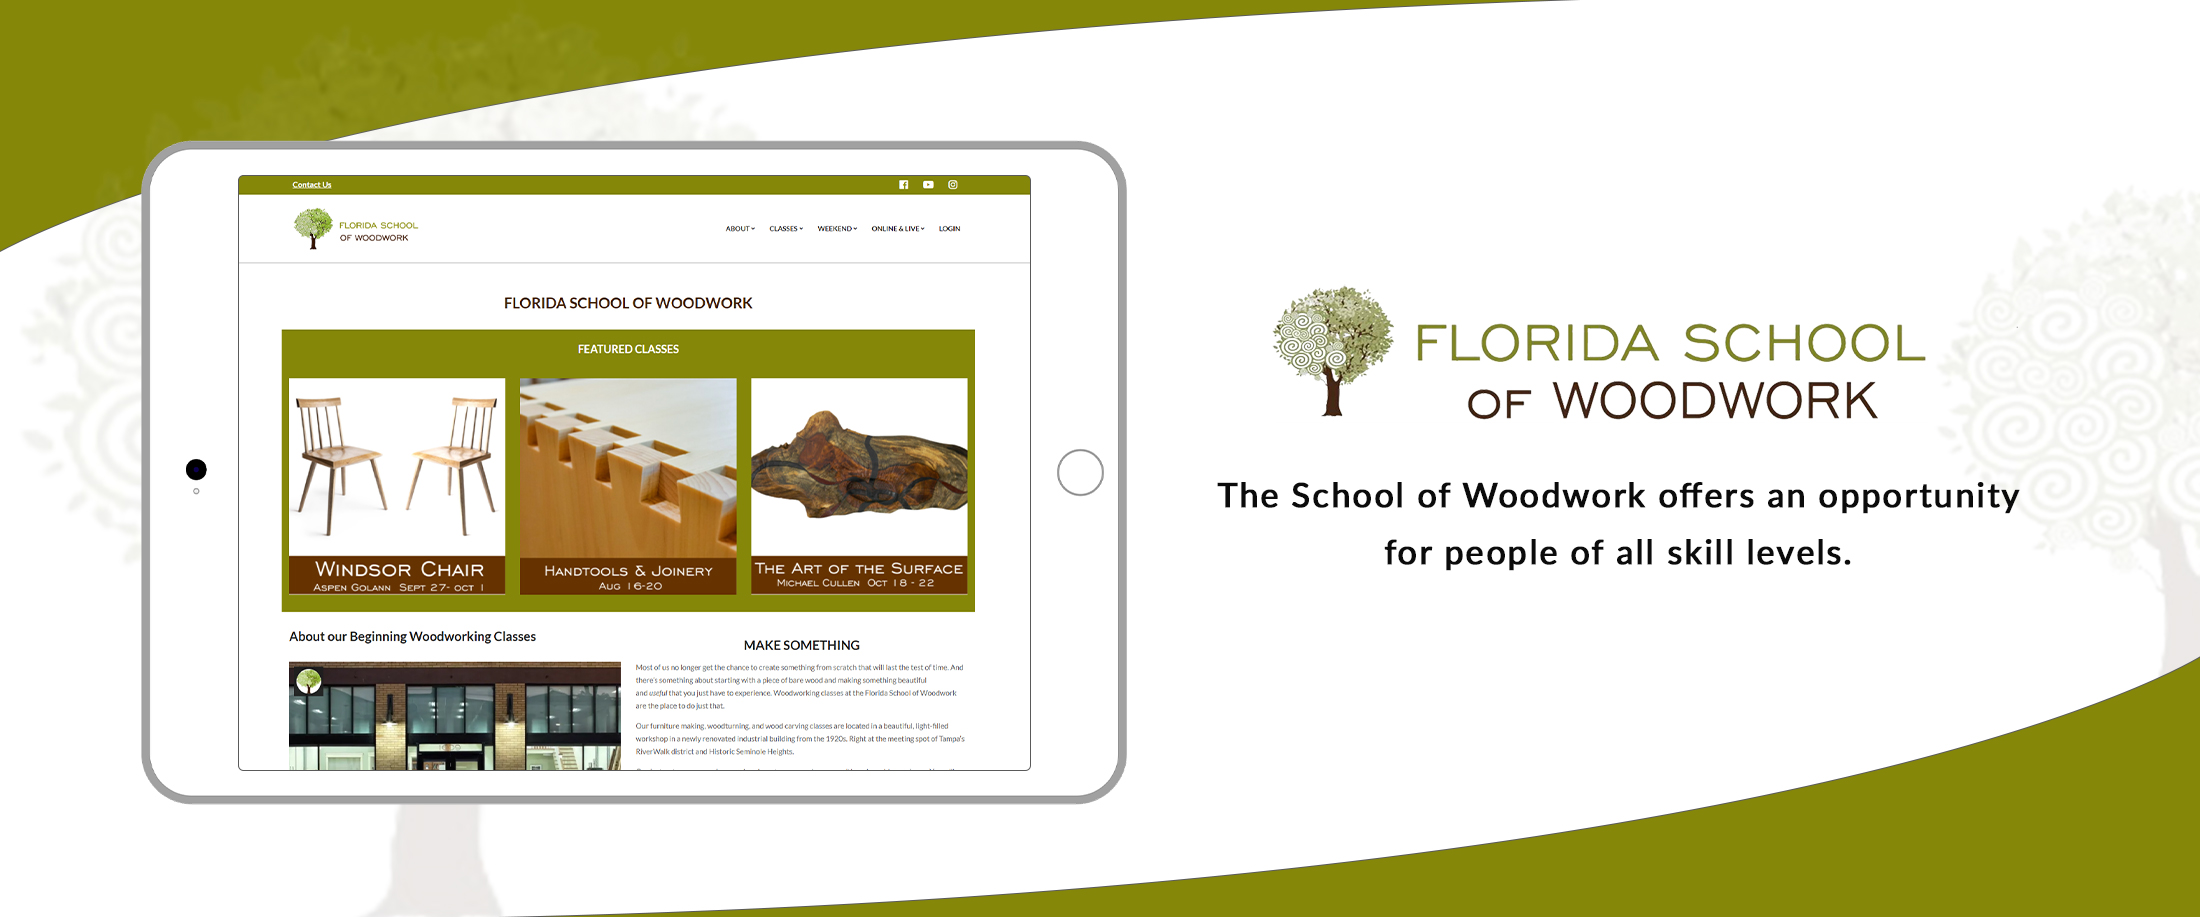 Florida-School-of-Woodwork-banner